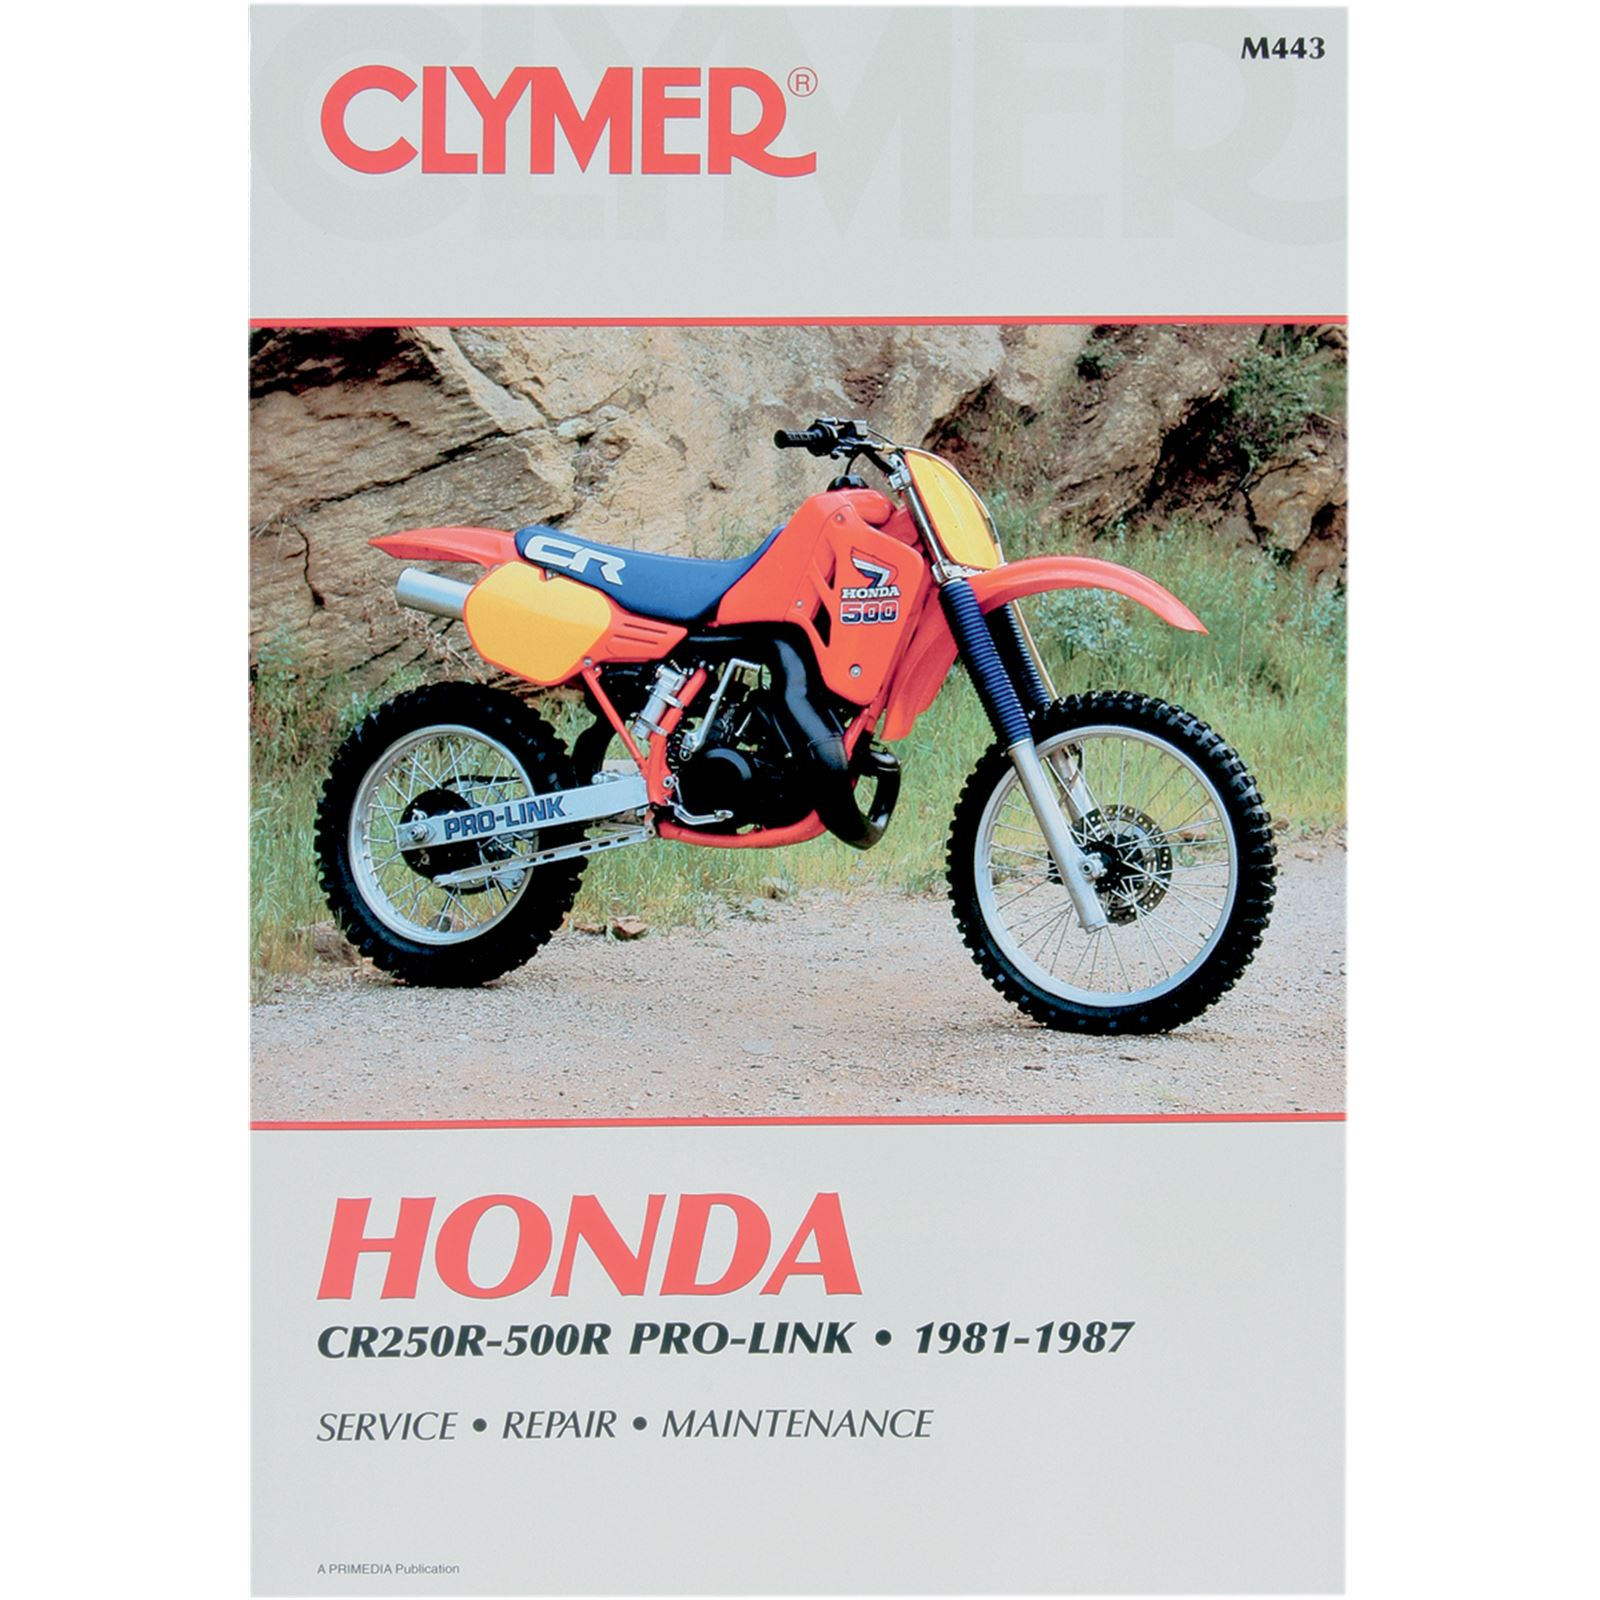 Clymer Manual for Honda CR250-500R